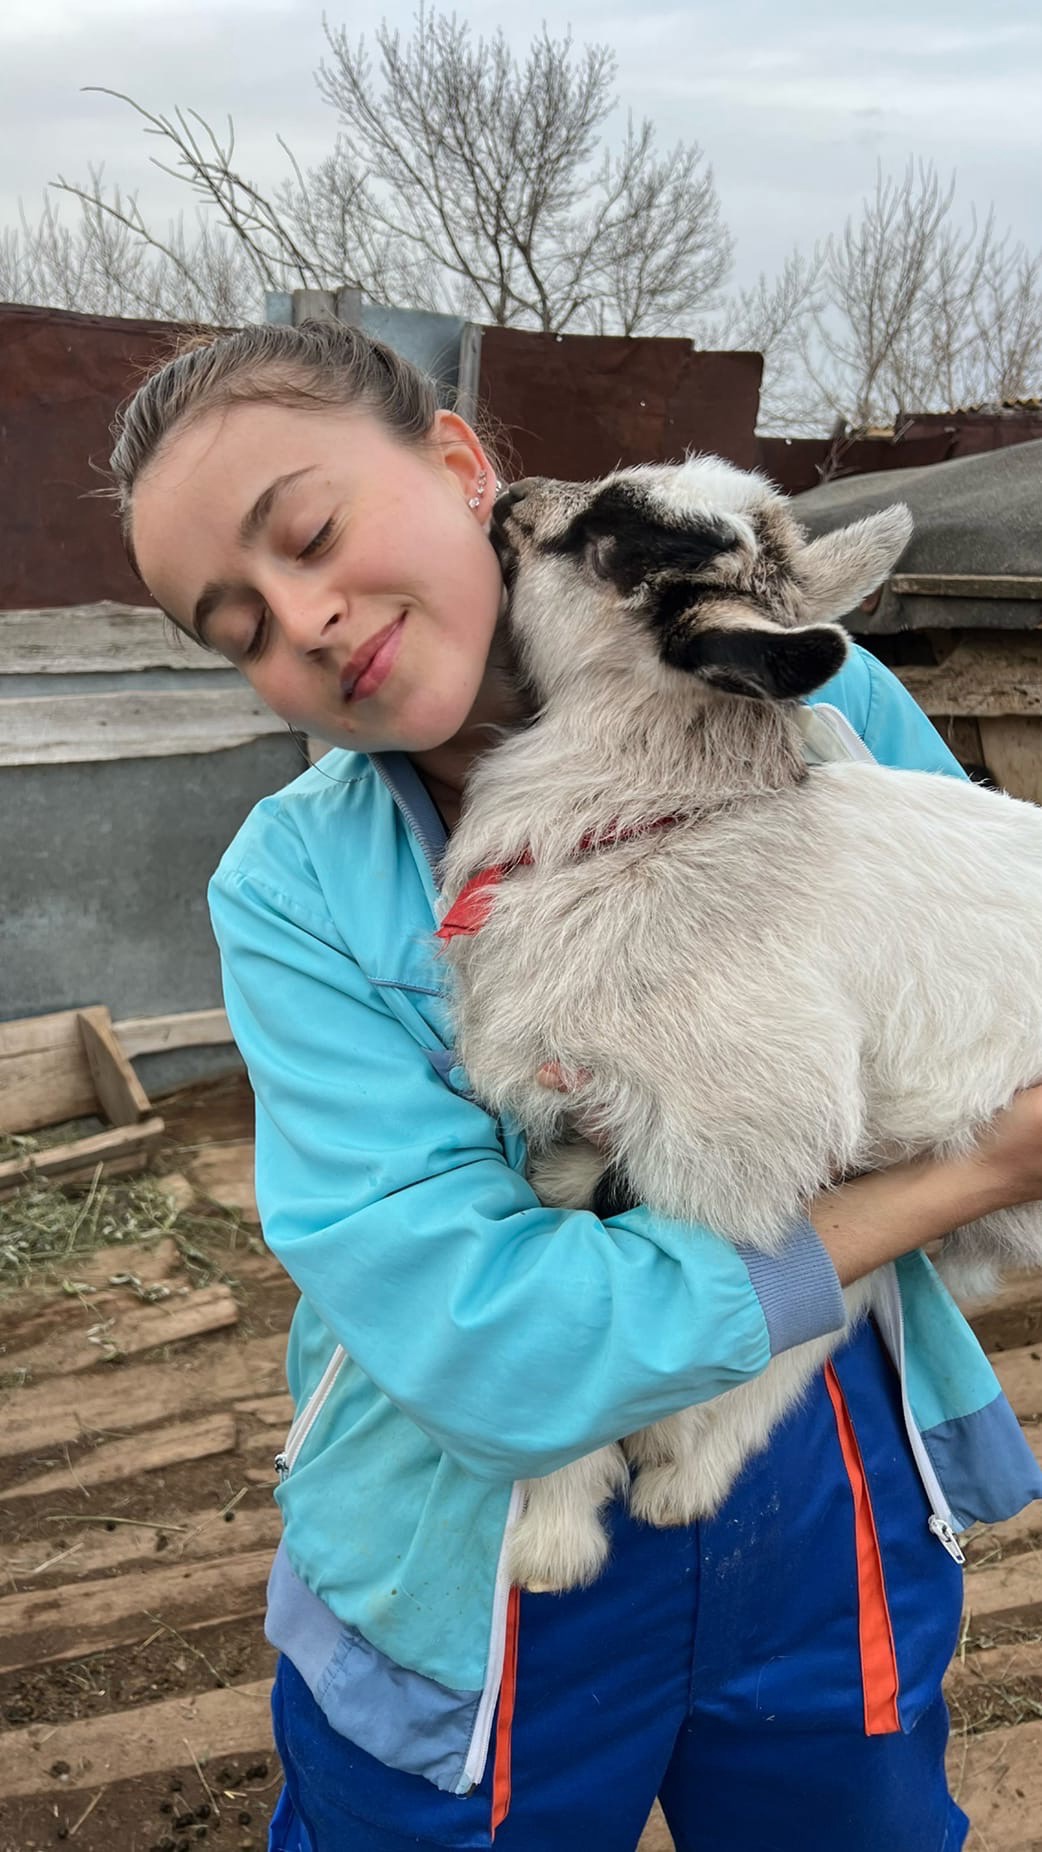 Каролина Моисеенко прославилась тем, что выкладывает забавные ролики с гусем и козами, а также показывает простые радости сельского быта.